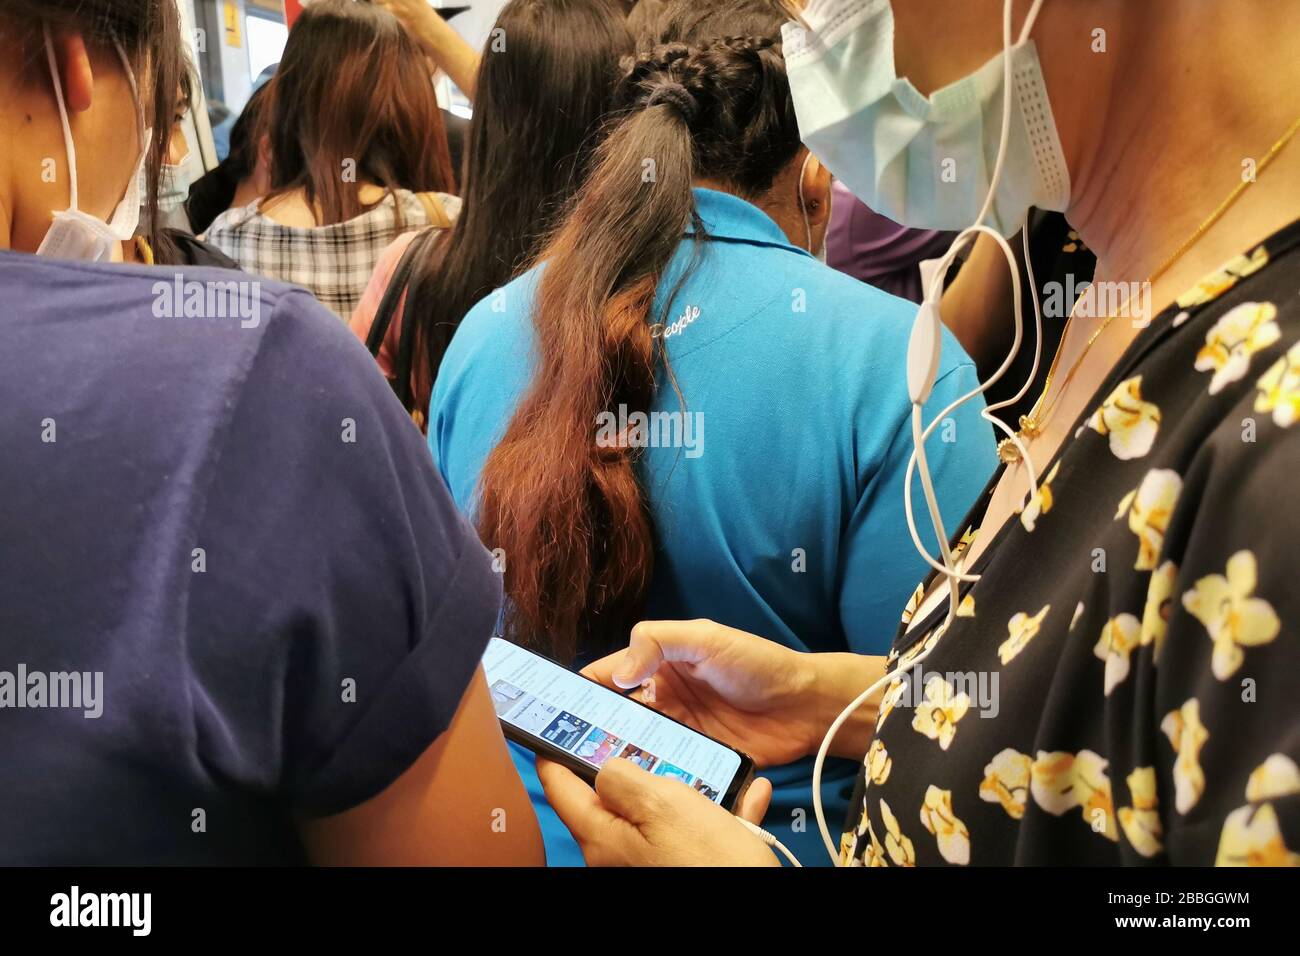 Bangkok, Thailand - 14. März 2020: asiatische Passagiere im Skytrain öffentliche Verkehrsmittel tragen Hygienemaske und werden Pandemie-Nachrichten lesen Stockfoto